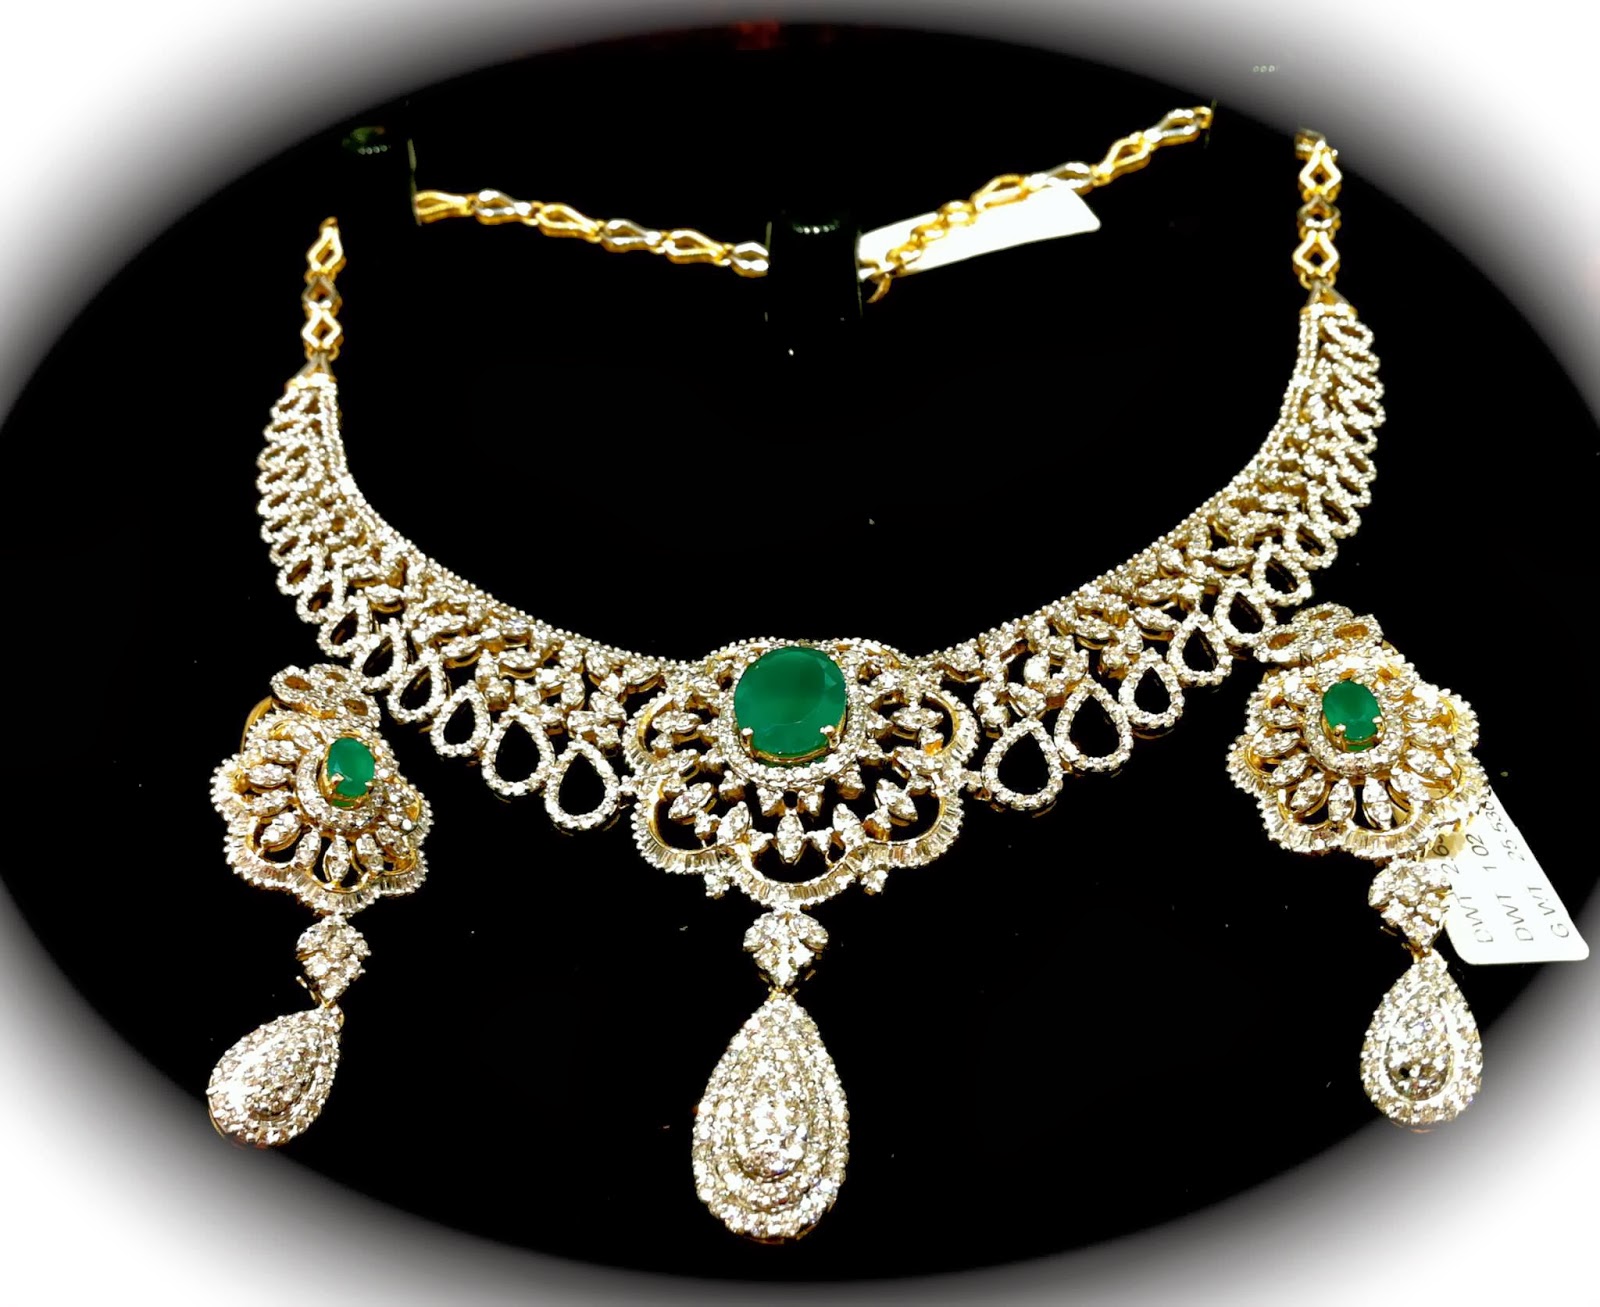 Diamond Necklace Jewelry Design Ideas